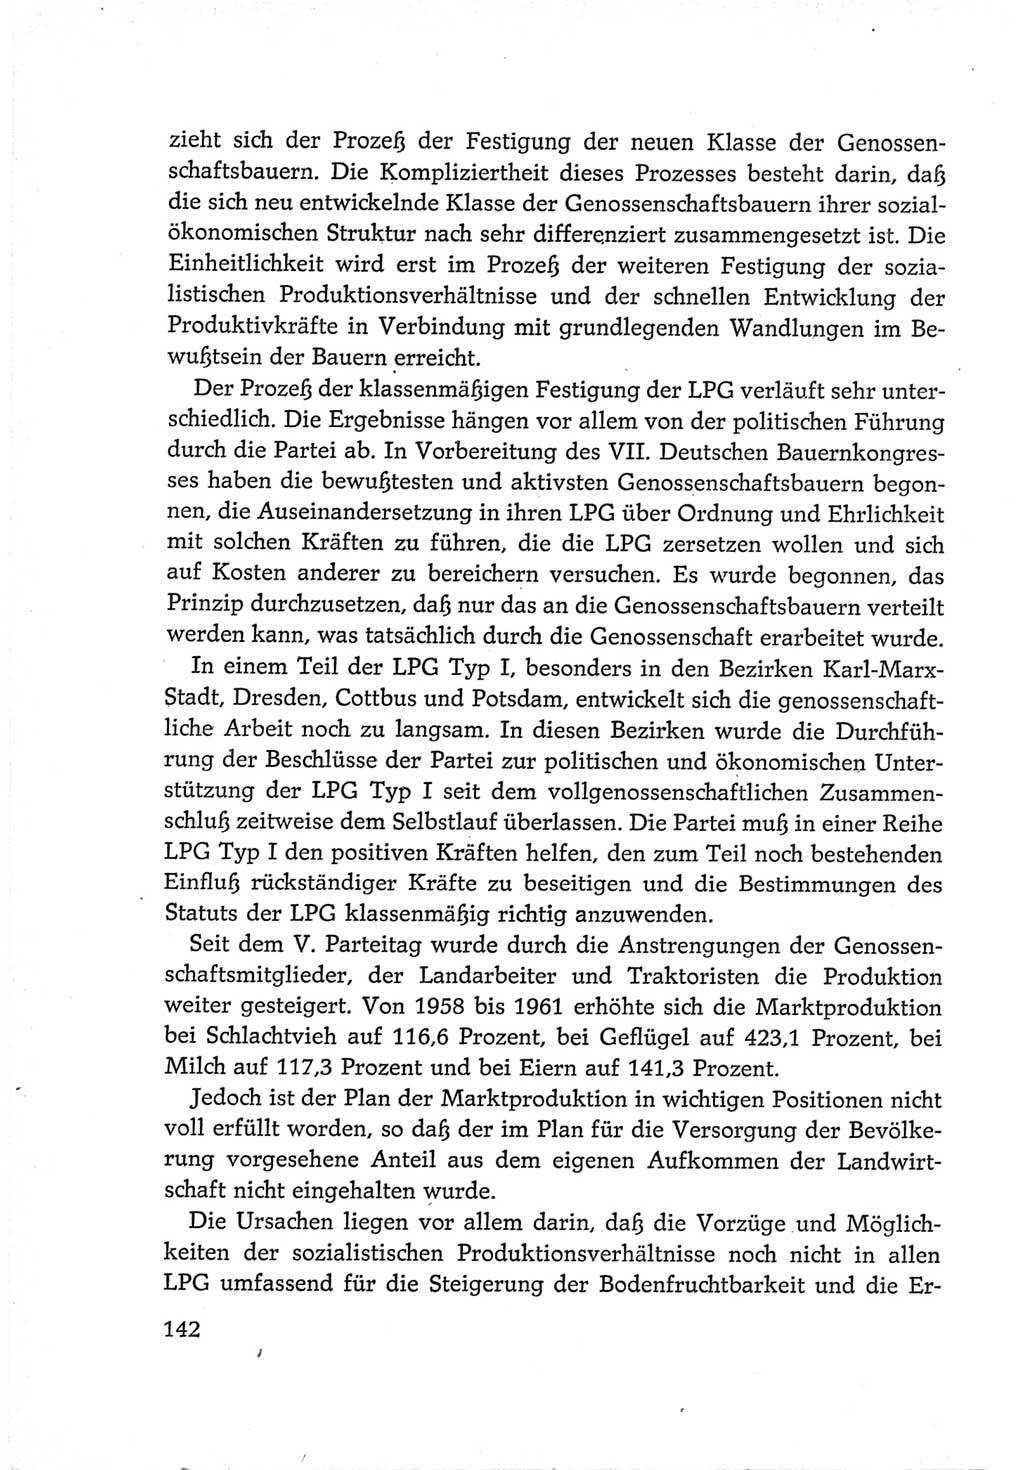 Protokoll der Verhandlungen des Ⅵ. Parteitages der Sozialistischen Einheitspartei Deutschlands (SED) [Deutsche Demokratische Republik (DDR)] 1963, Band Ⅳ, Seite 142 (Prot. Verh. Ⅵ. PT SED DDR 1963, Bd. Ⅳ, S. 142)